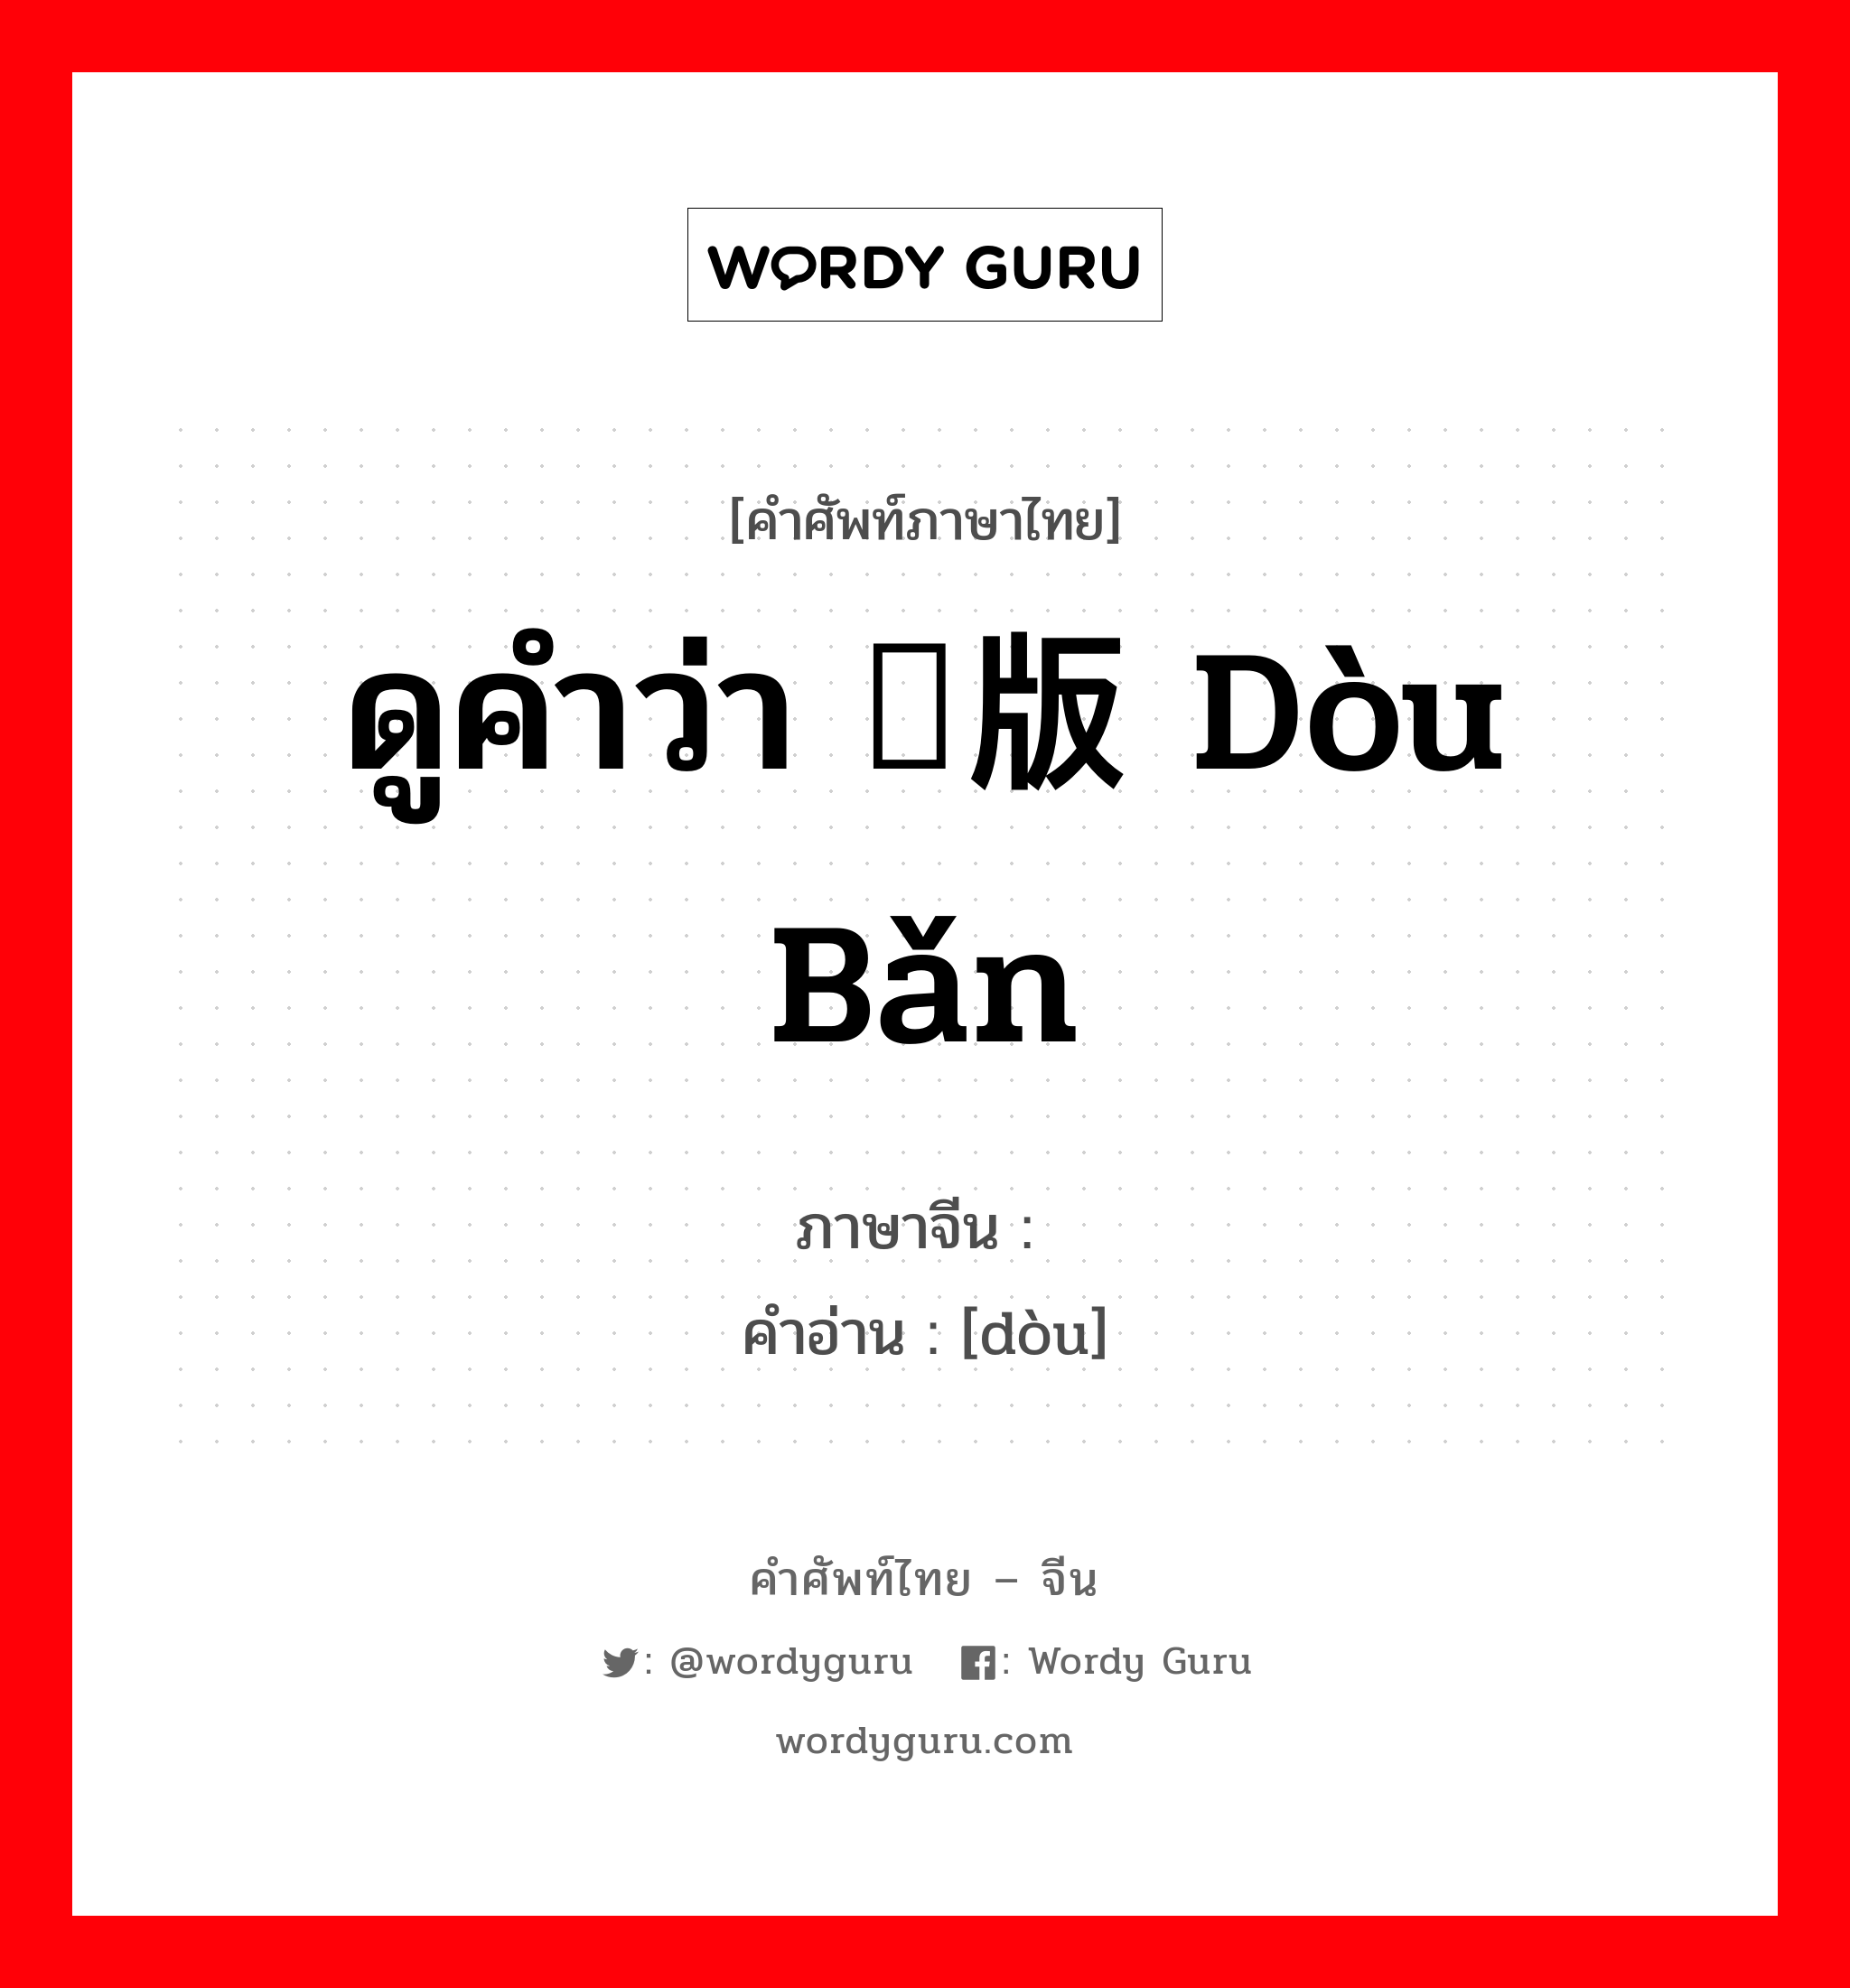 ดูคำว่า 饾版 dòu bǎn ภาษาจีนคืออะไร, คำศัพท์ภาษาไทย - จีน ดูคำว่า 饾版 dòu bǎn ภาษาจีน 饾 คำอ่าน [dòu]